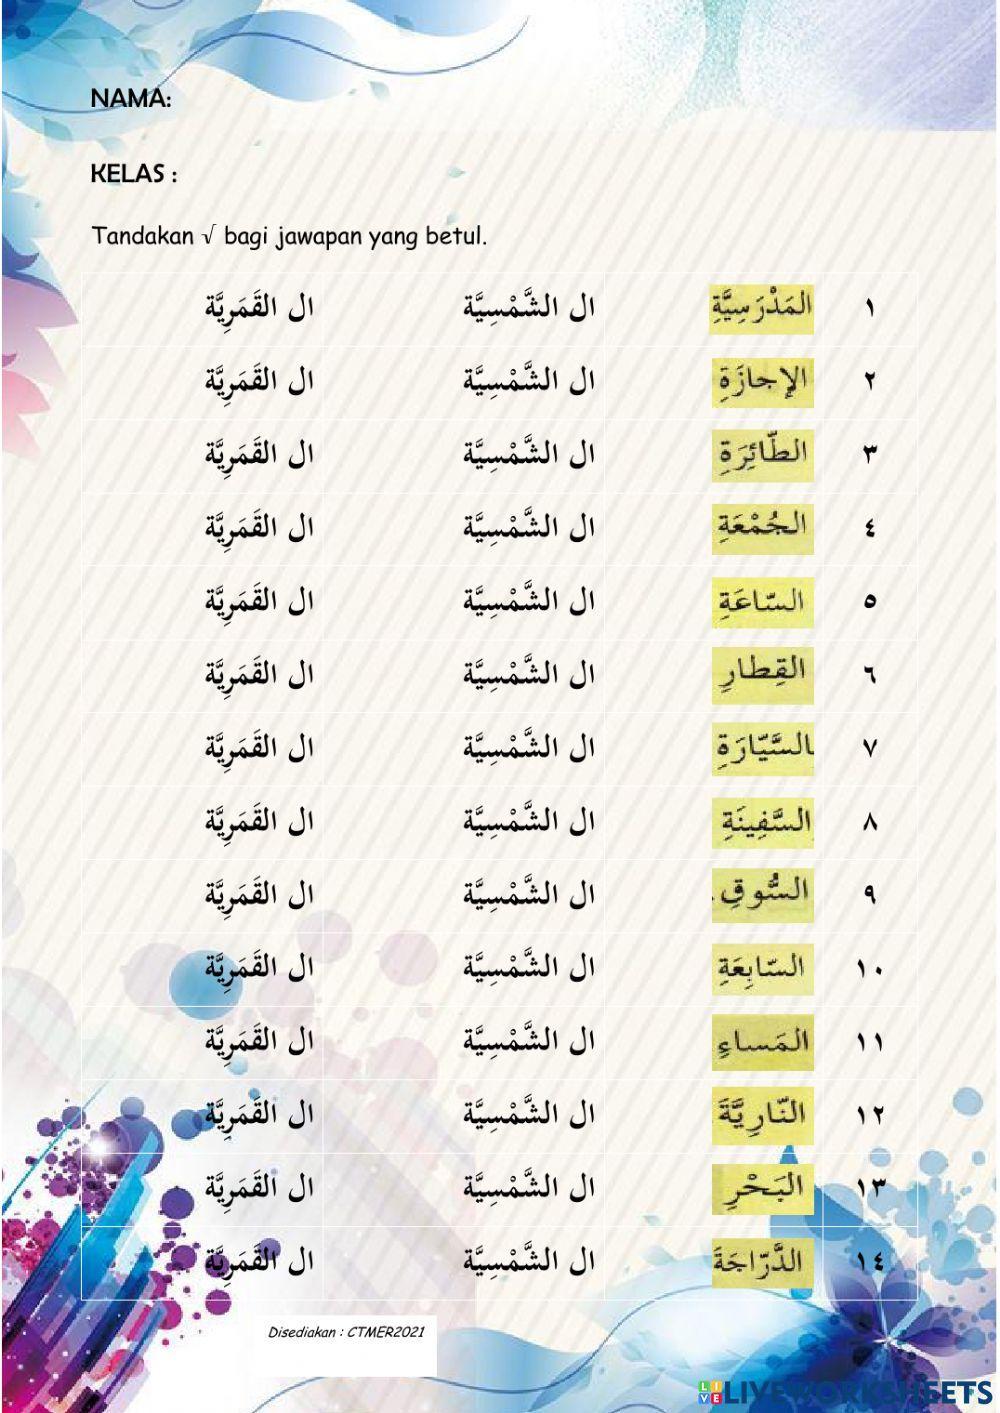 Latihan alif lam shamsiah dan qamariah